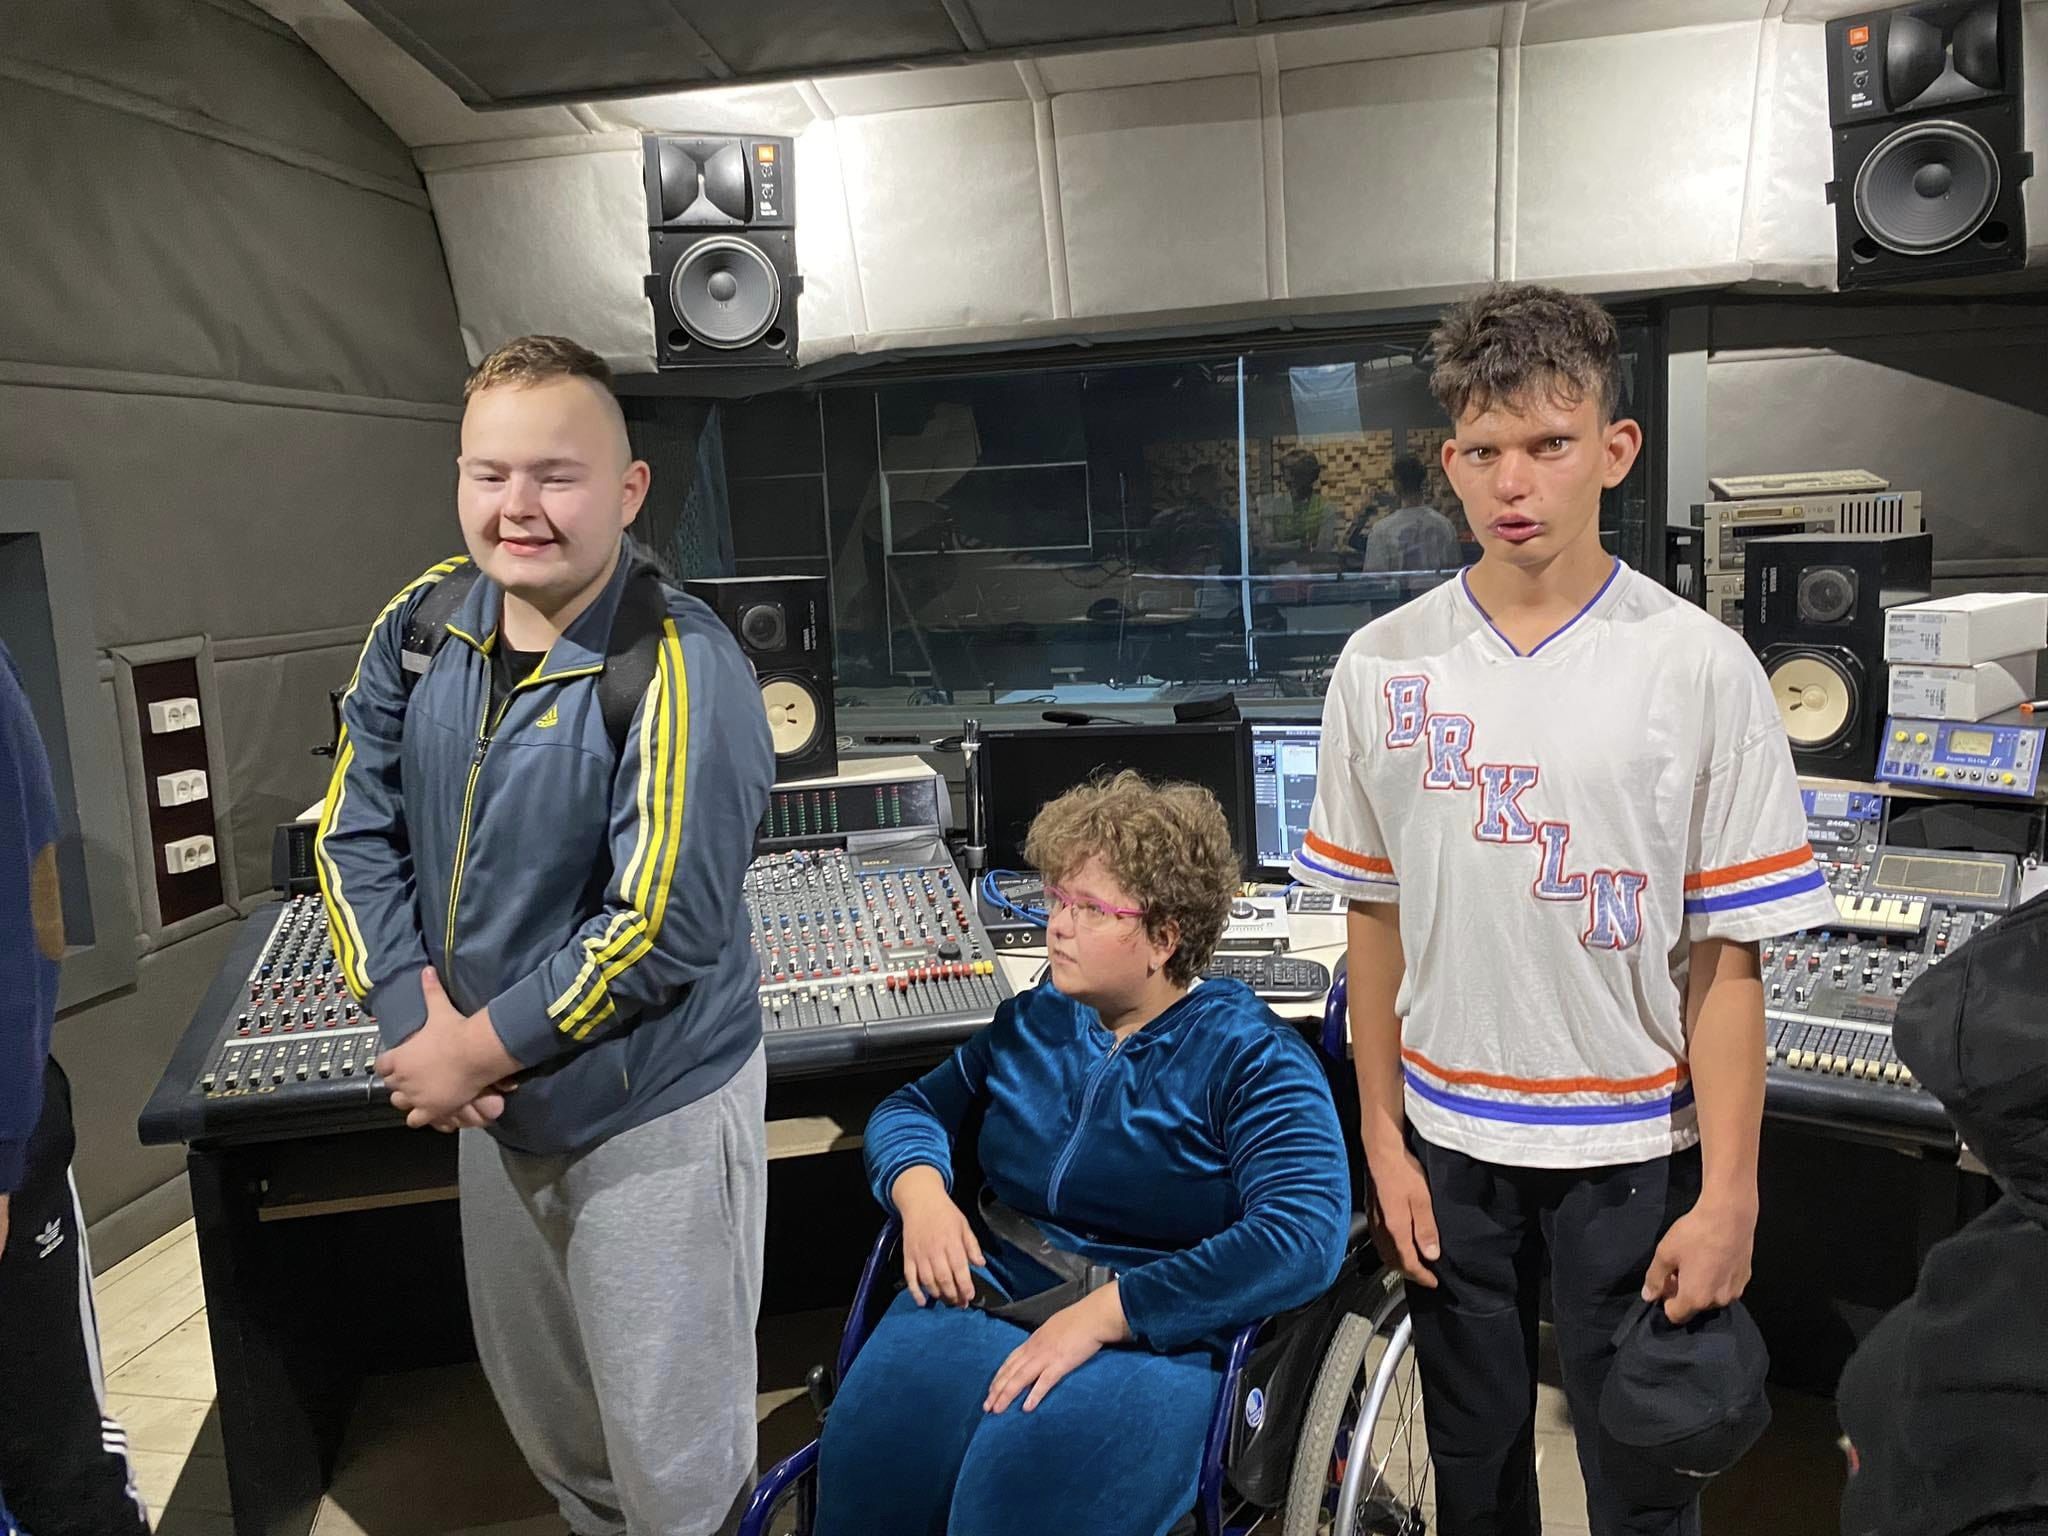 Na zdjęciu znajduje się dwóch chłopców stojących pomiędzy dziewczyną siedzącą na wózku inwalidzkim. Uczniowie znajdują się w pomieszczeniu realizatora dźwięku.